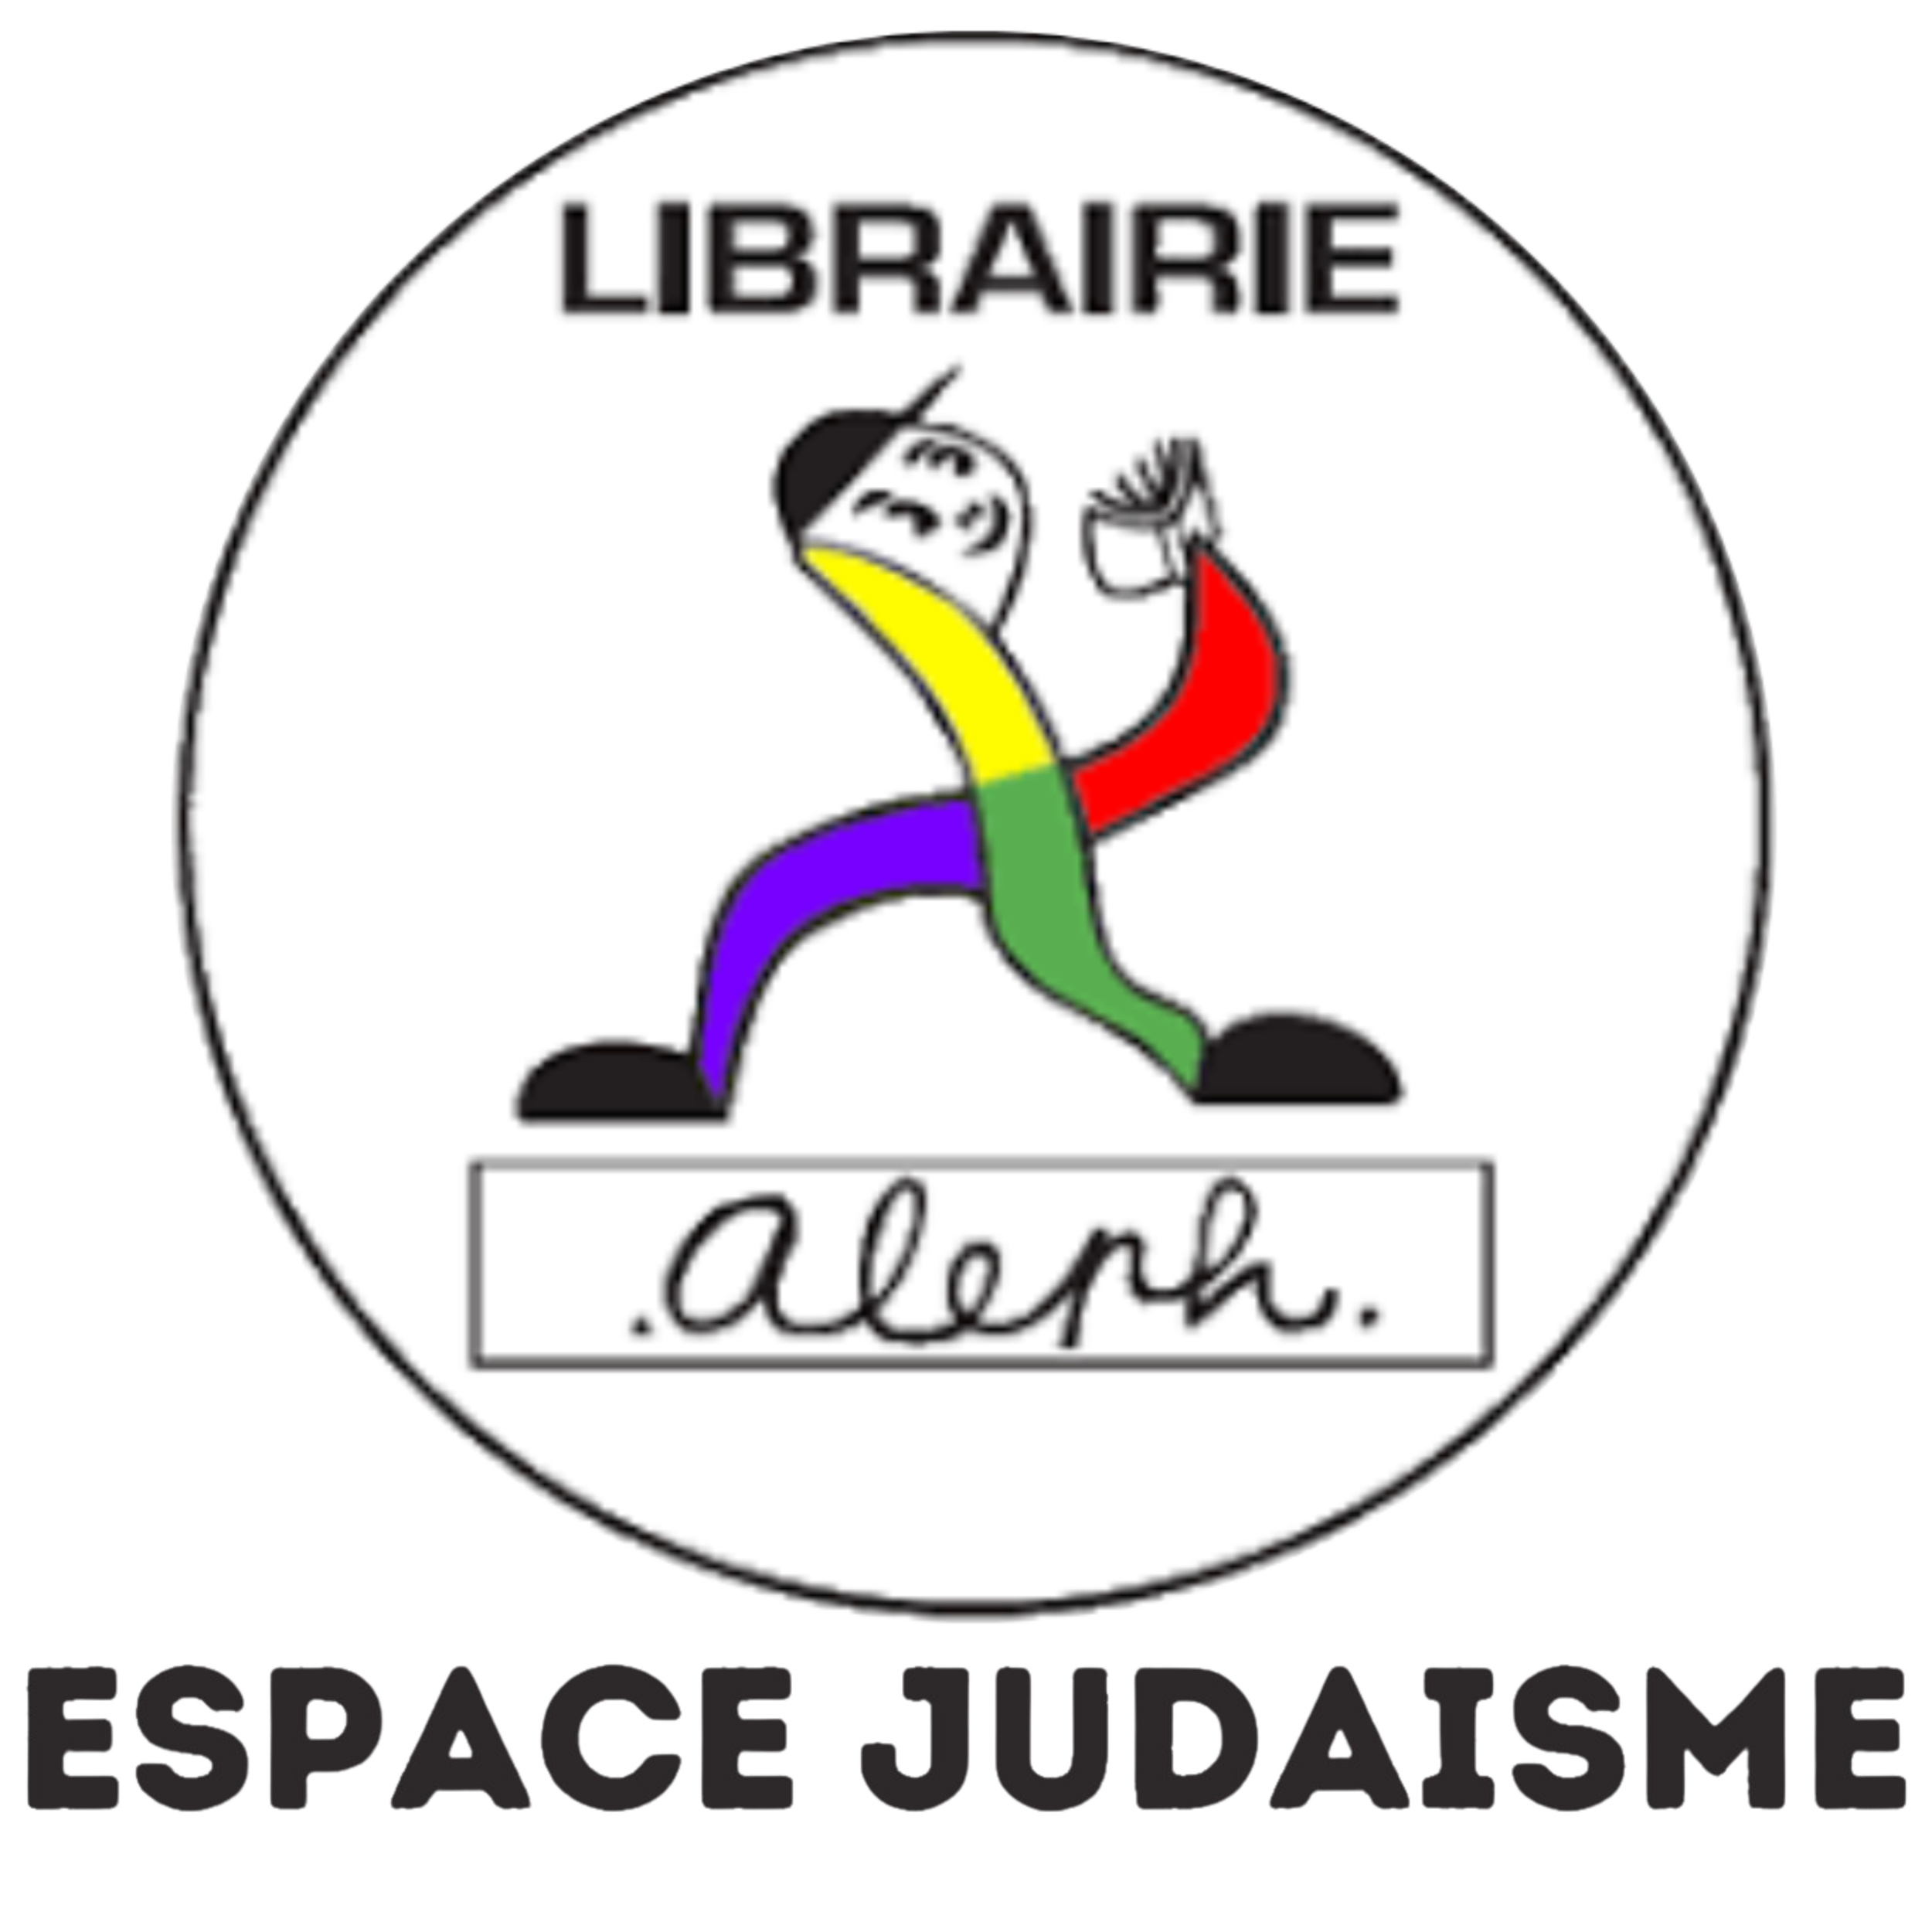 Espace-Judaisme